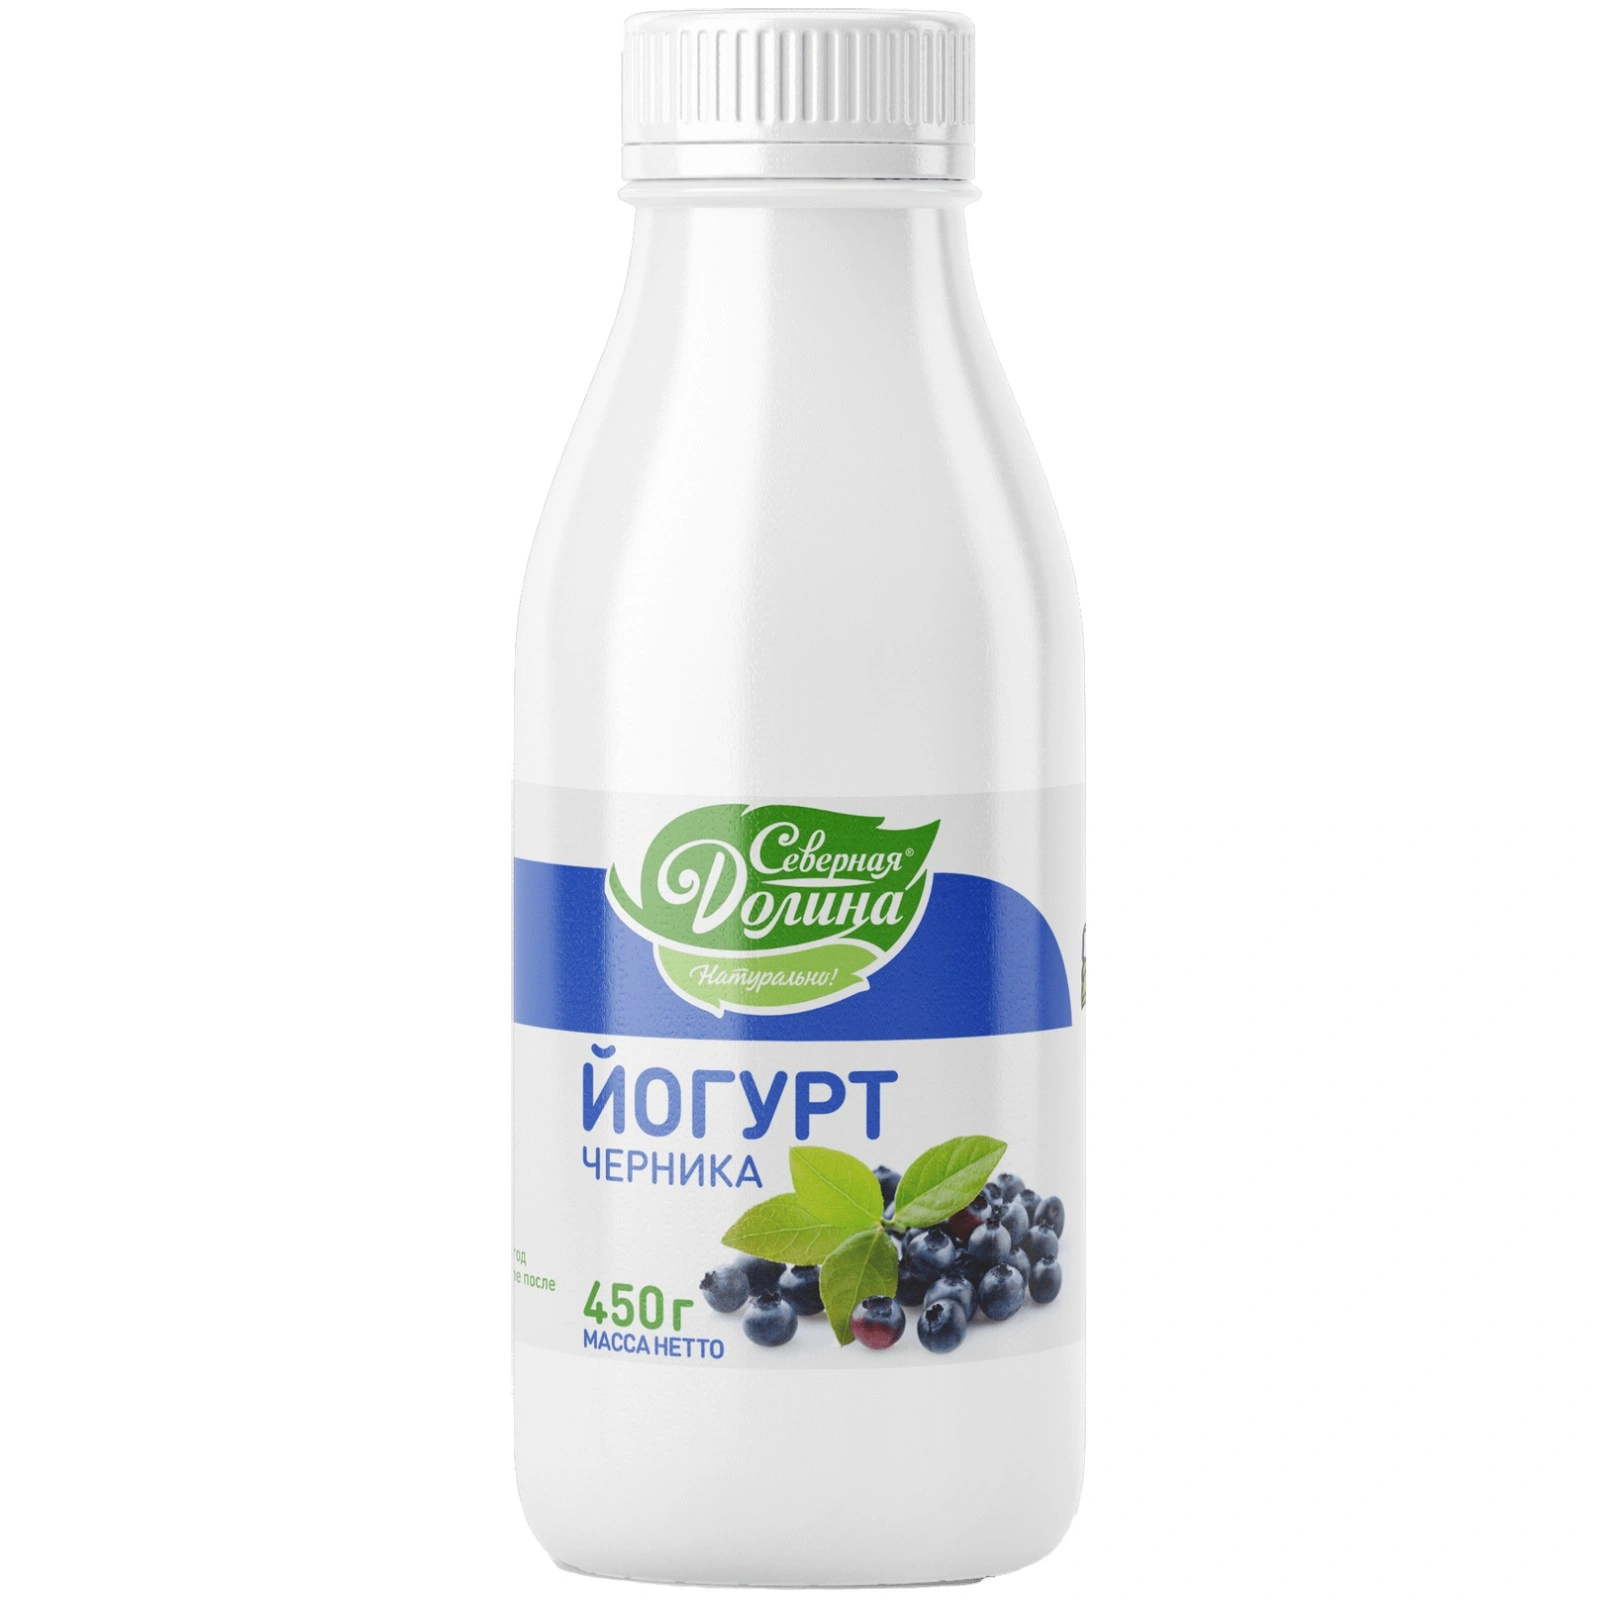  Йогурт "Славянский" черника 2,5% бут. 450 гр.Северная Долина (8) 